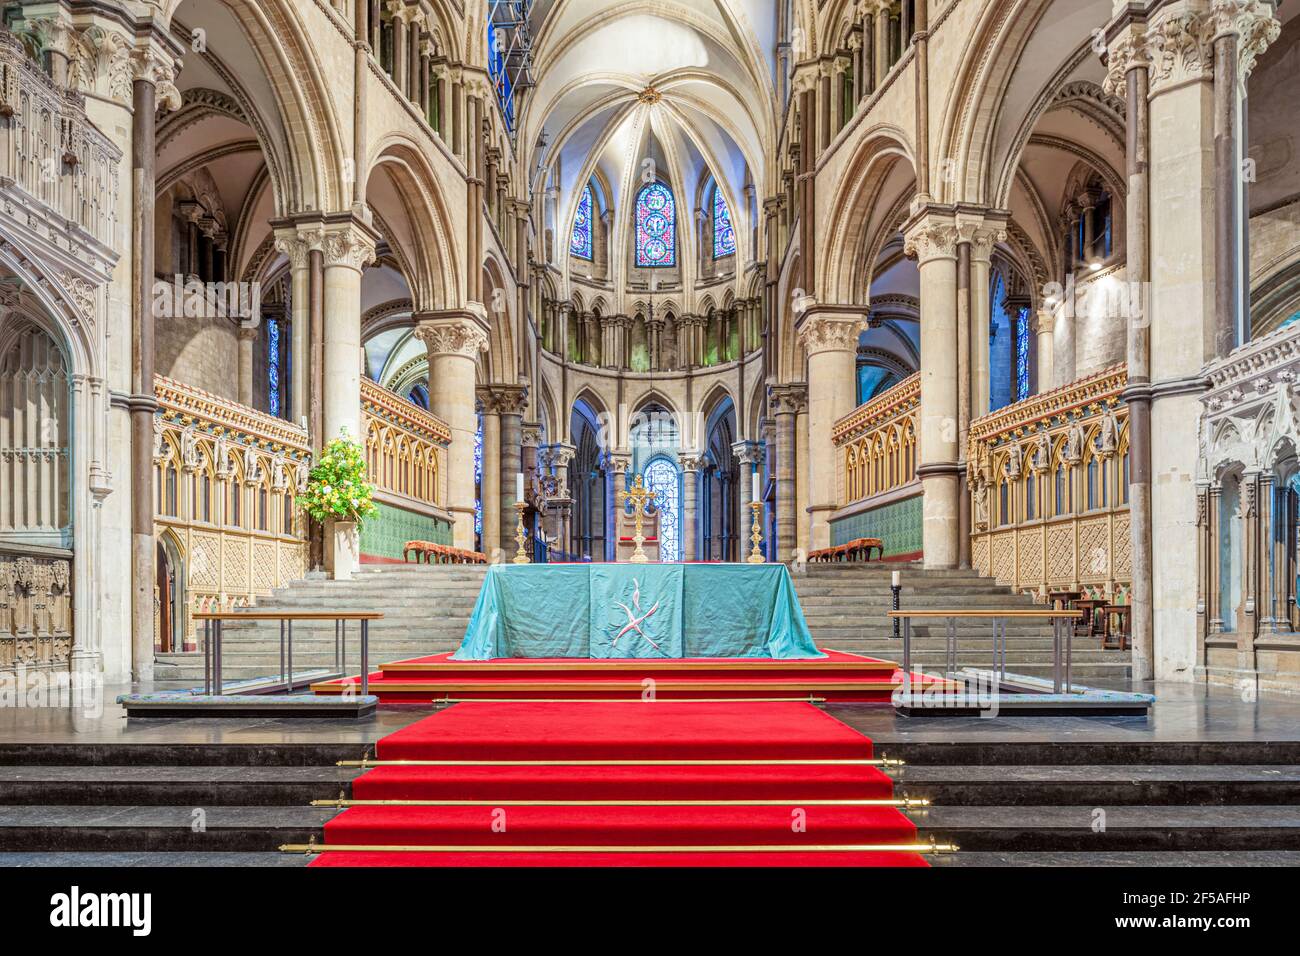 Le haut autel à la cathédrale de Canterbury, Kent, Angleterre Royaume-Uni Banque D'Images